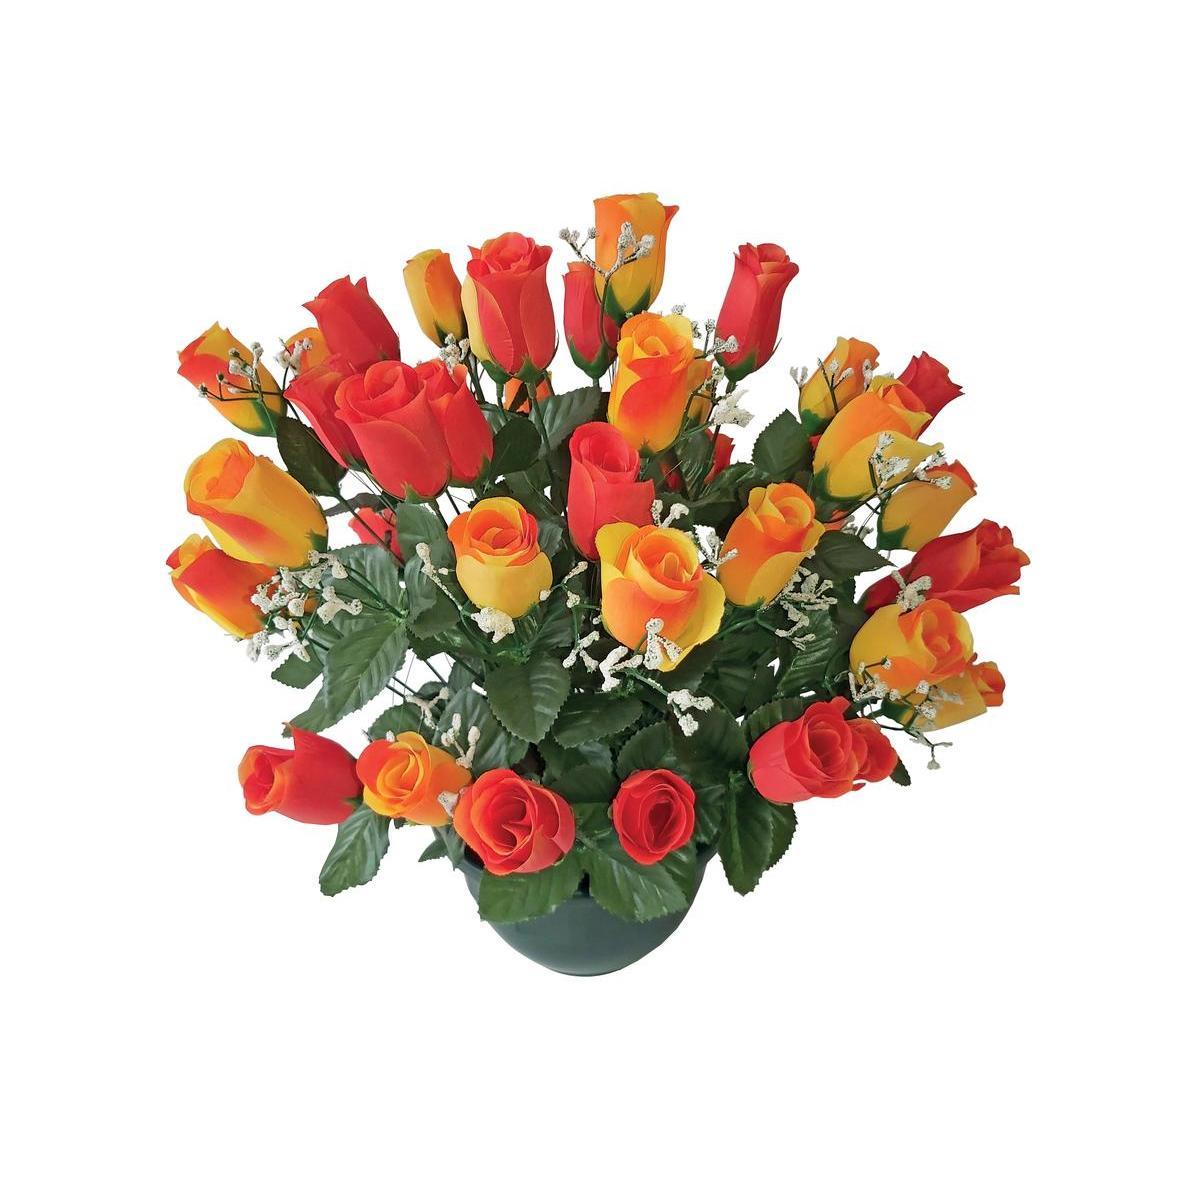 Coupe de roses et de gypsophiles synthétiques - 55 x 45 cm - Différents coloris - Orange, rouge, vert, violet, rose